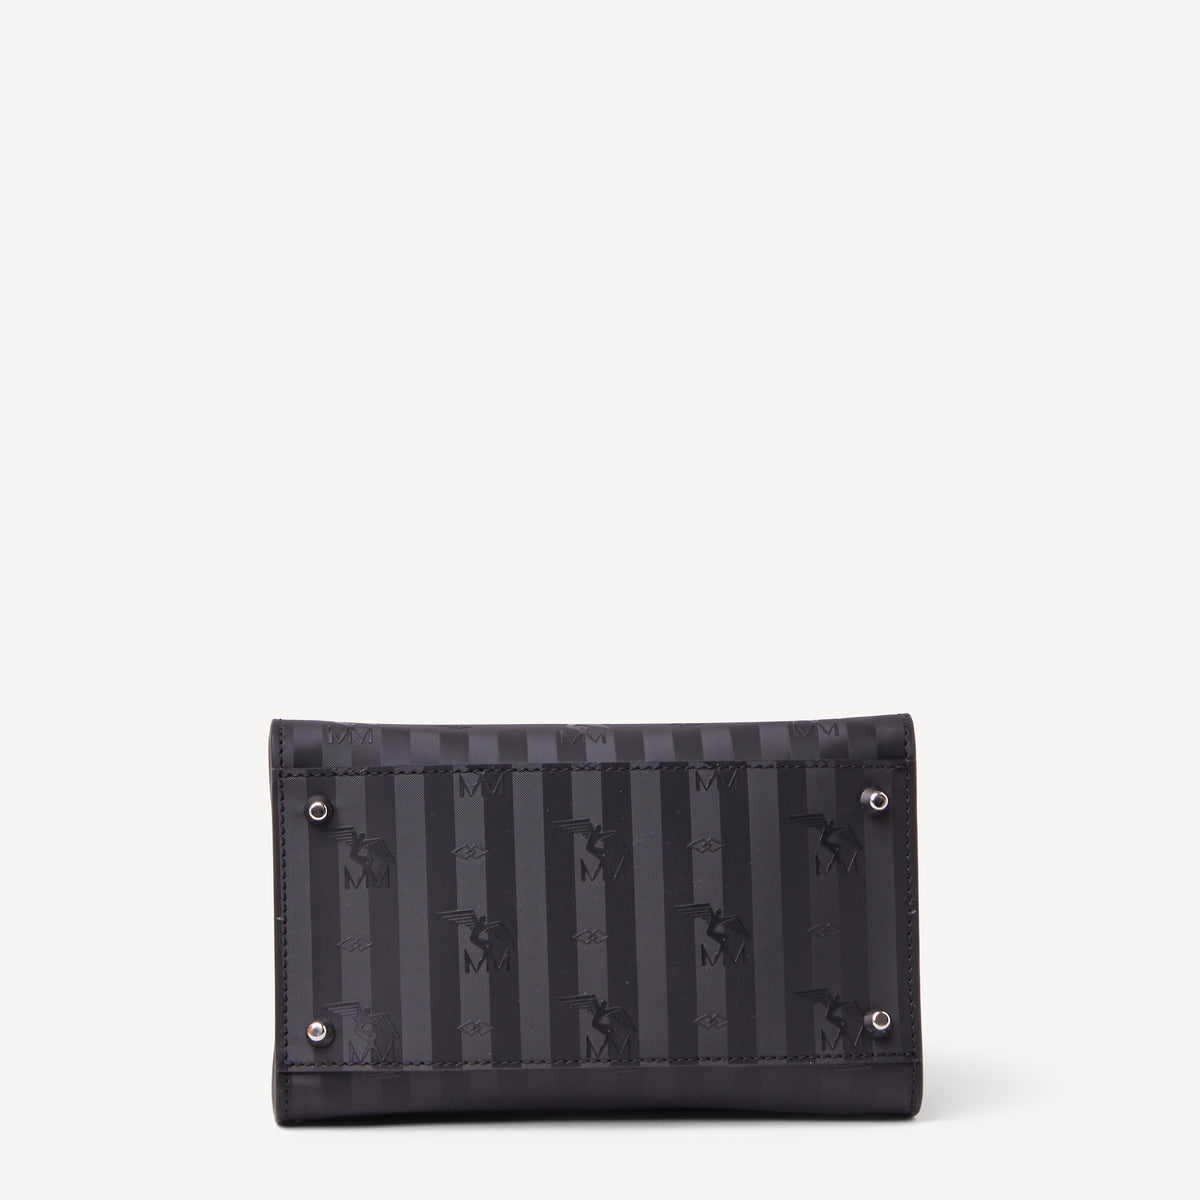 SOGLIO | Handtasche schwarz/silber - von unten